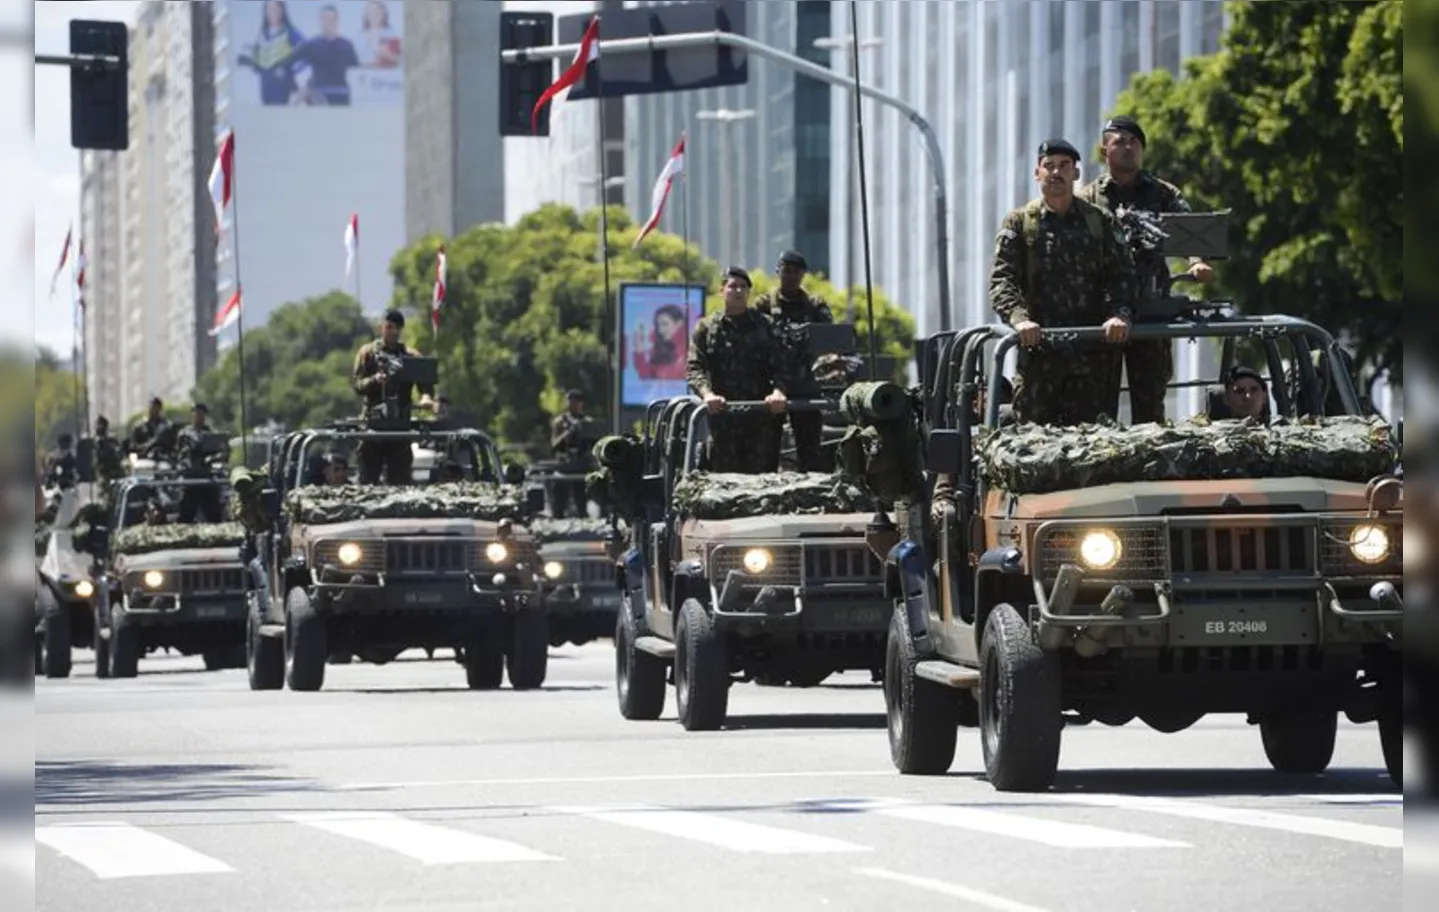 Tradicionalmente, a parada militar em comemoração ao Sete de Setembro no Rio de Janeiro é realizada no centro da cidade